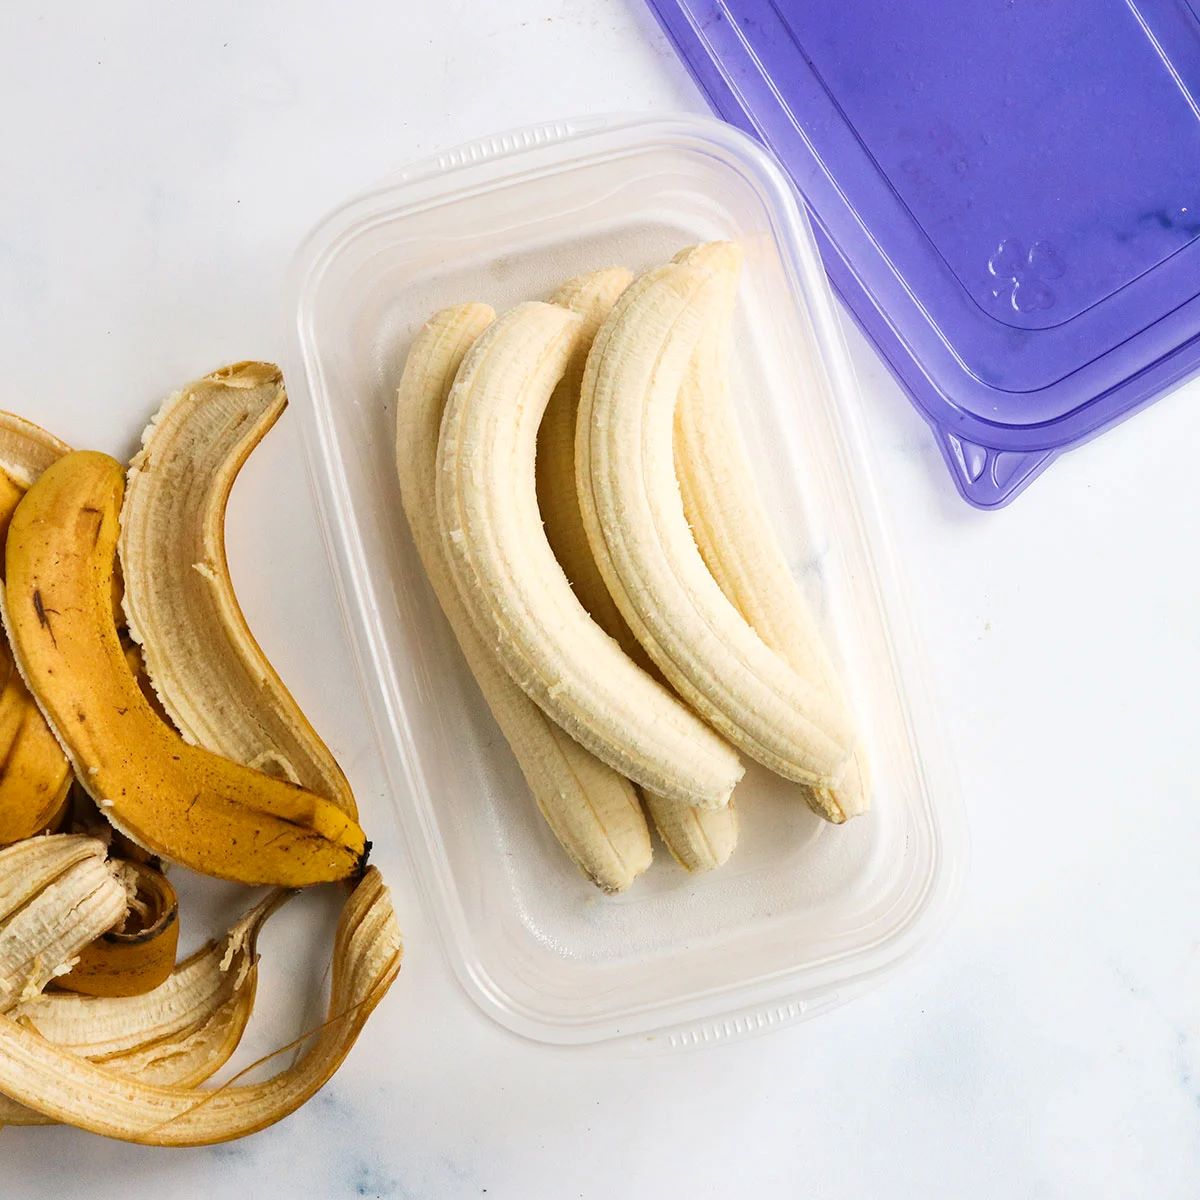 How To Store Peeled Banana